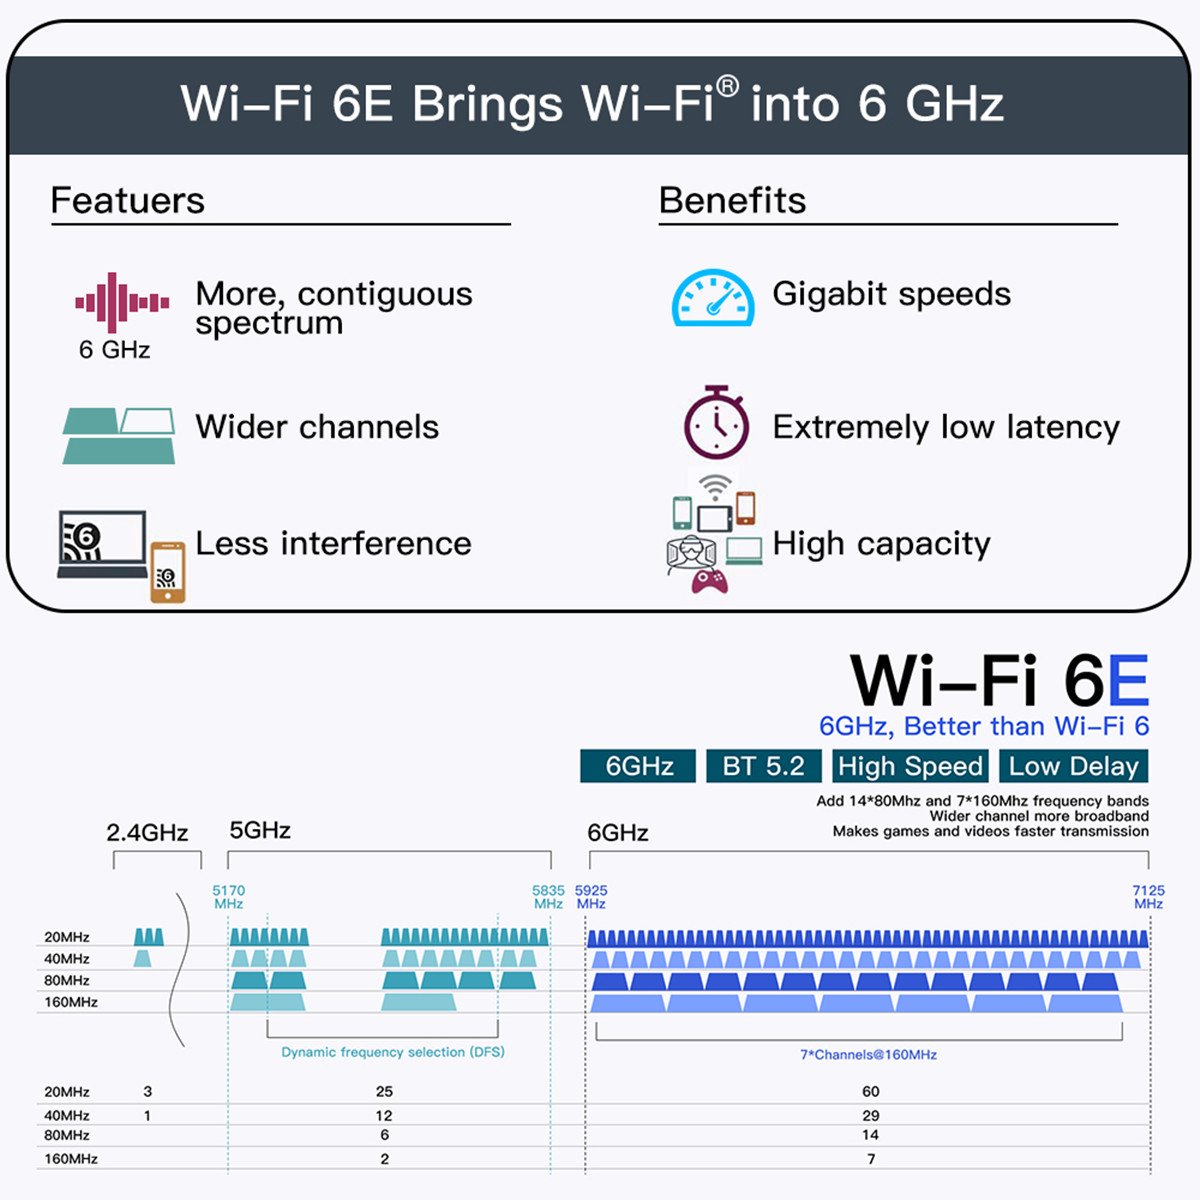 WiFi 6E AX210HMW 2.4G/5G/6G Mini PCI-E Wifi Card For Intel AX210